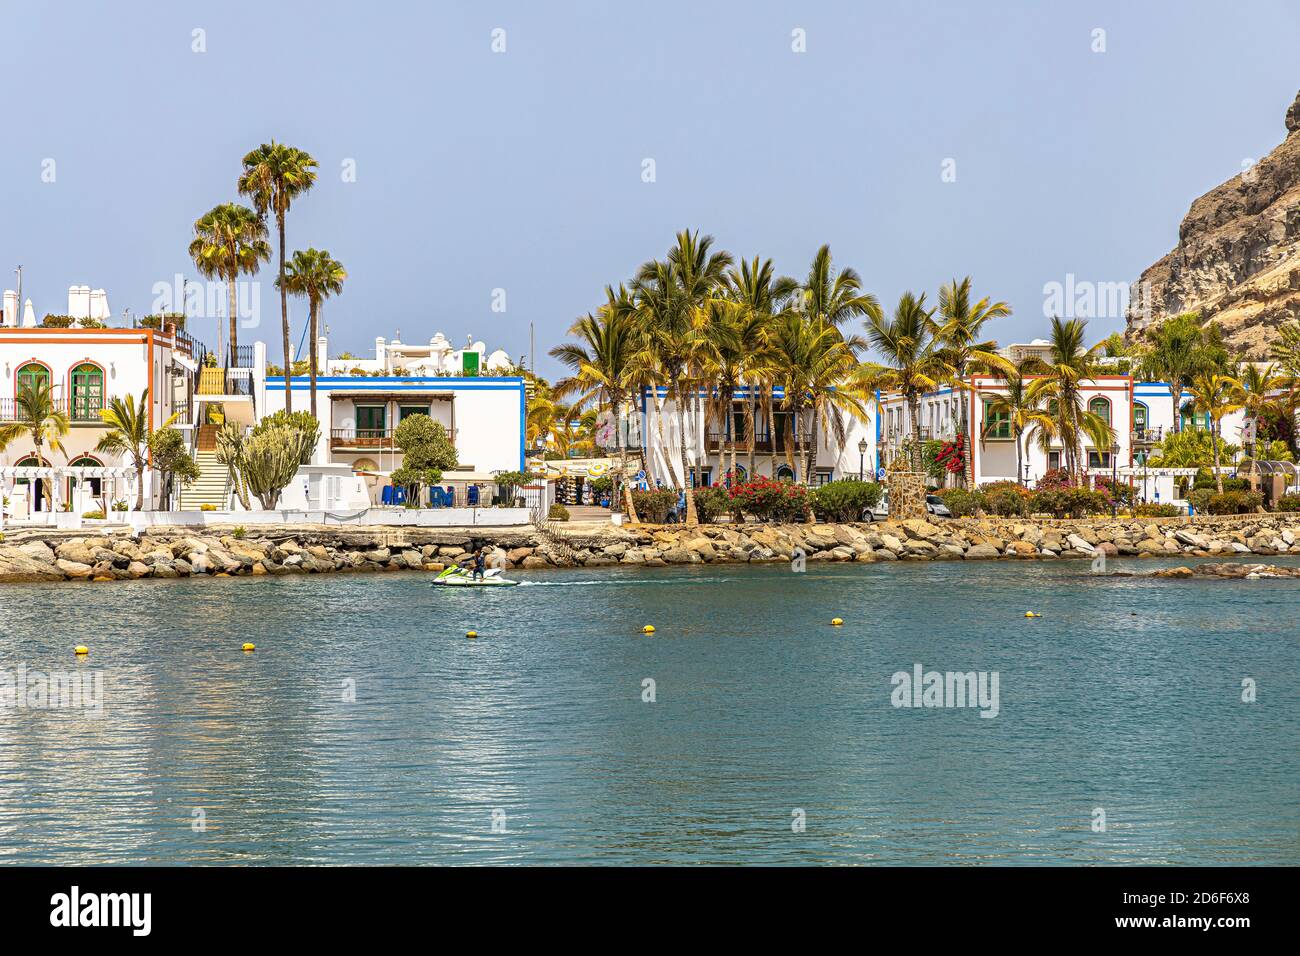 Playa Mogan - am Strand der beliebten Hafenstadt Puerto de Mogan, südwestlich von Gran Canaria, Spanien Stockfoto